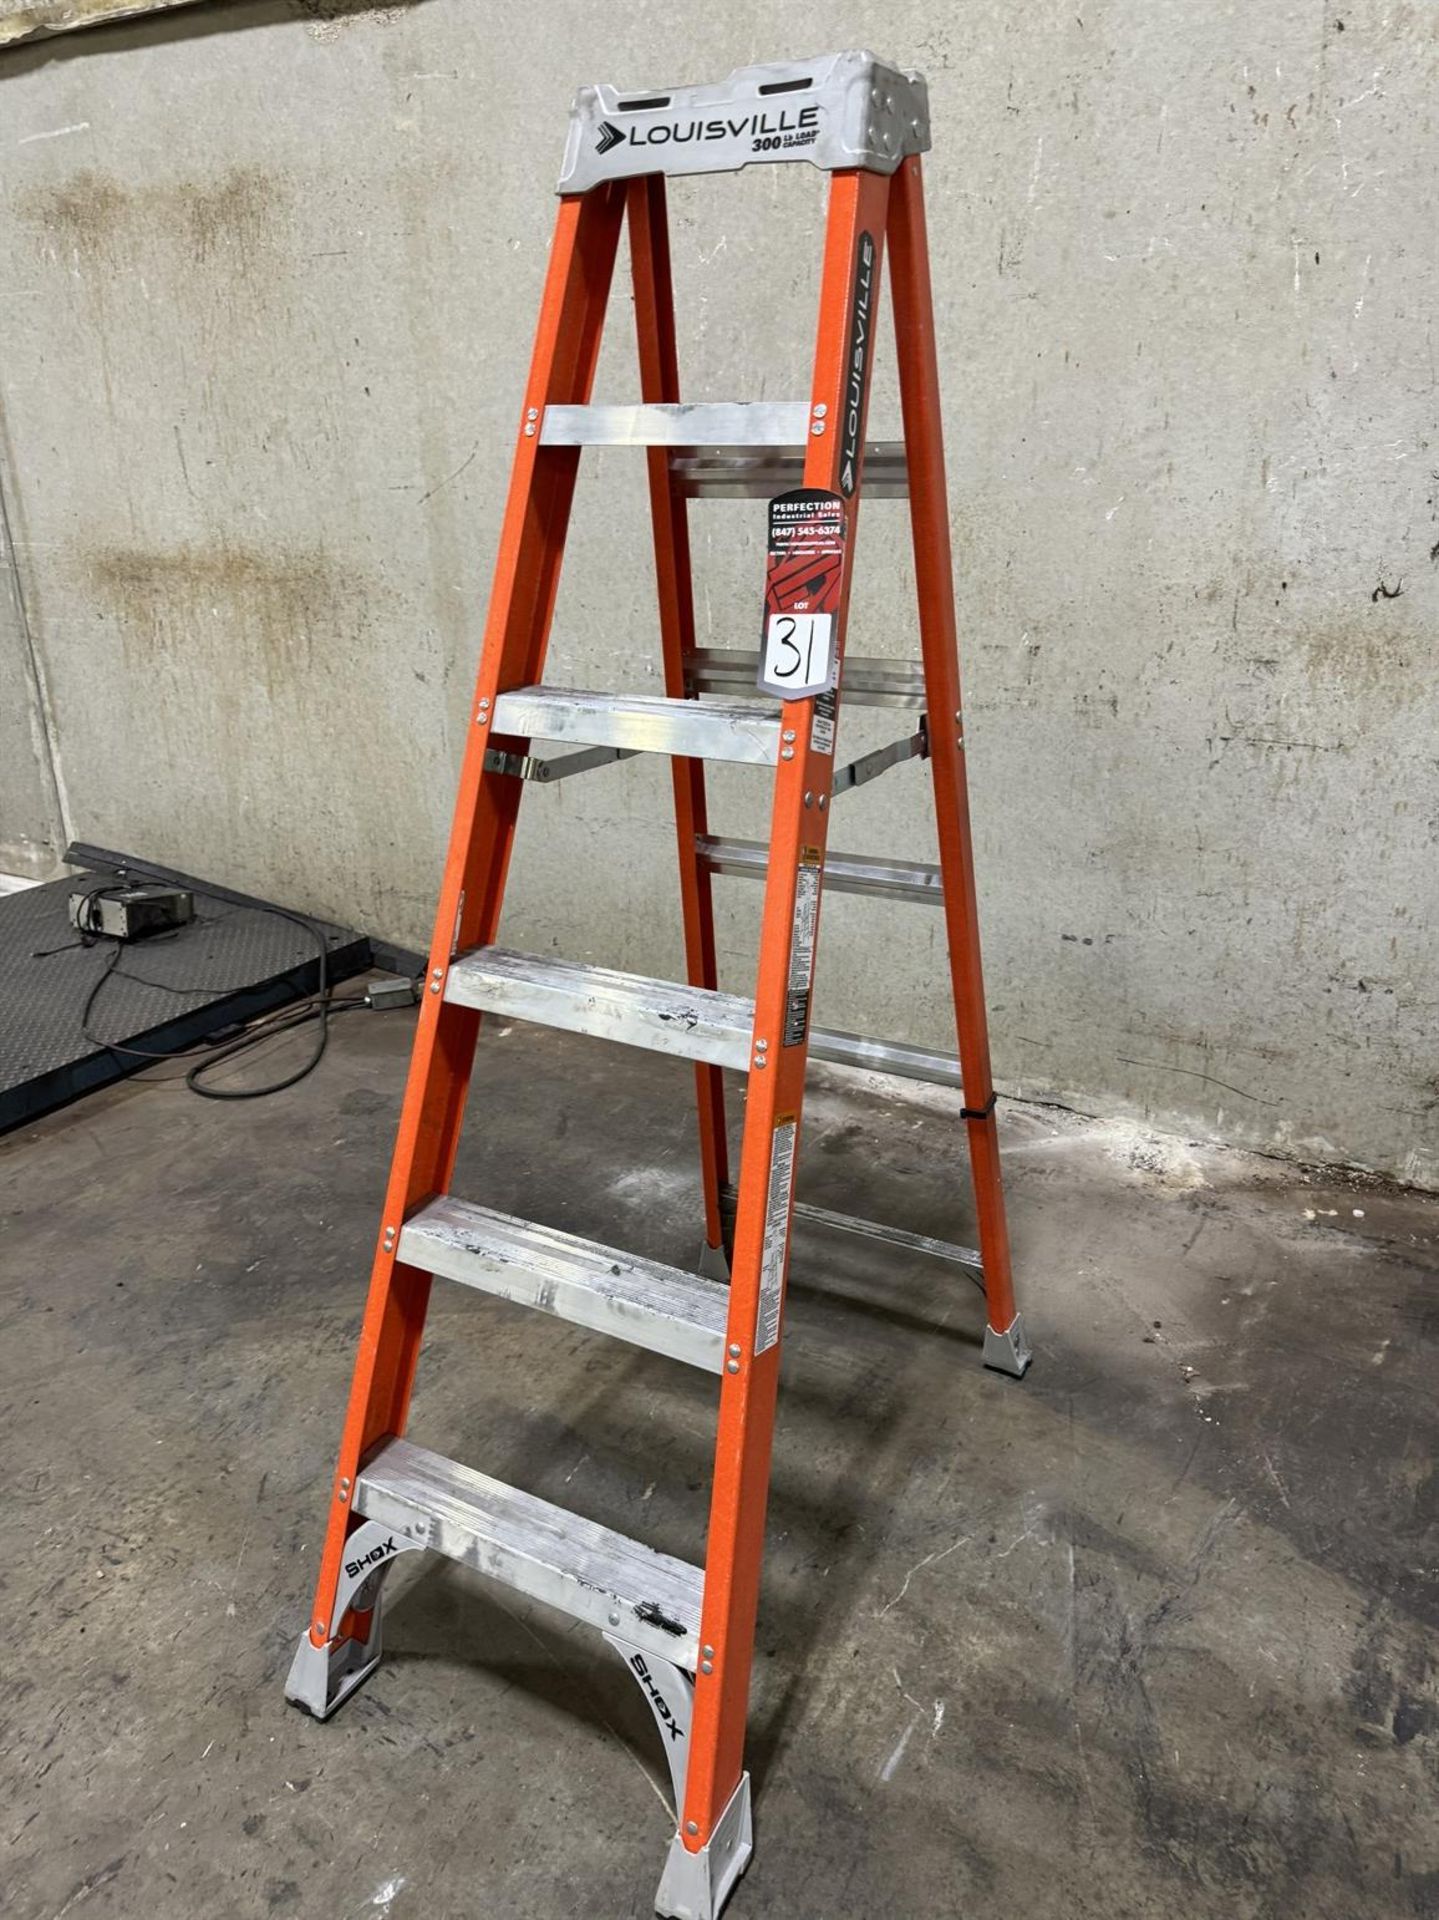 LOUISVILLE F81506 6' Fiberglass Extension Ladder